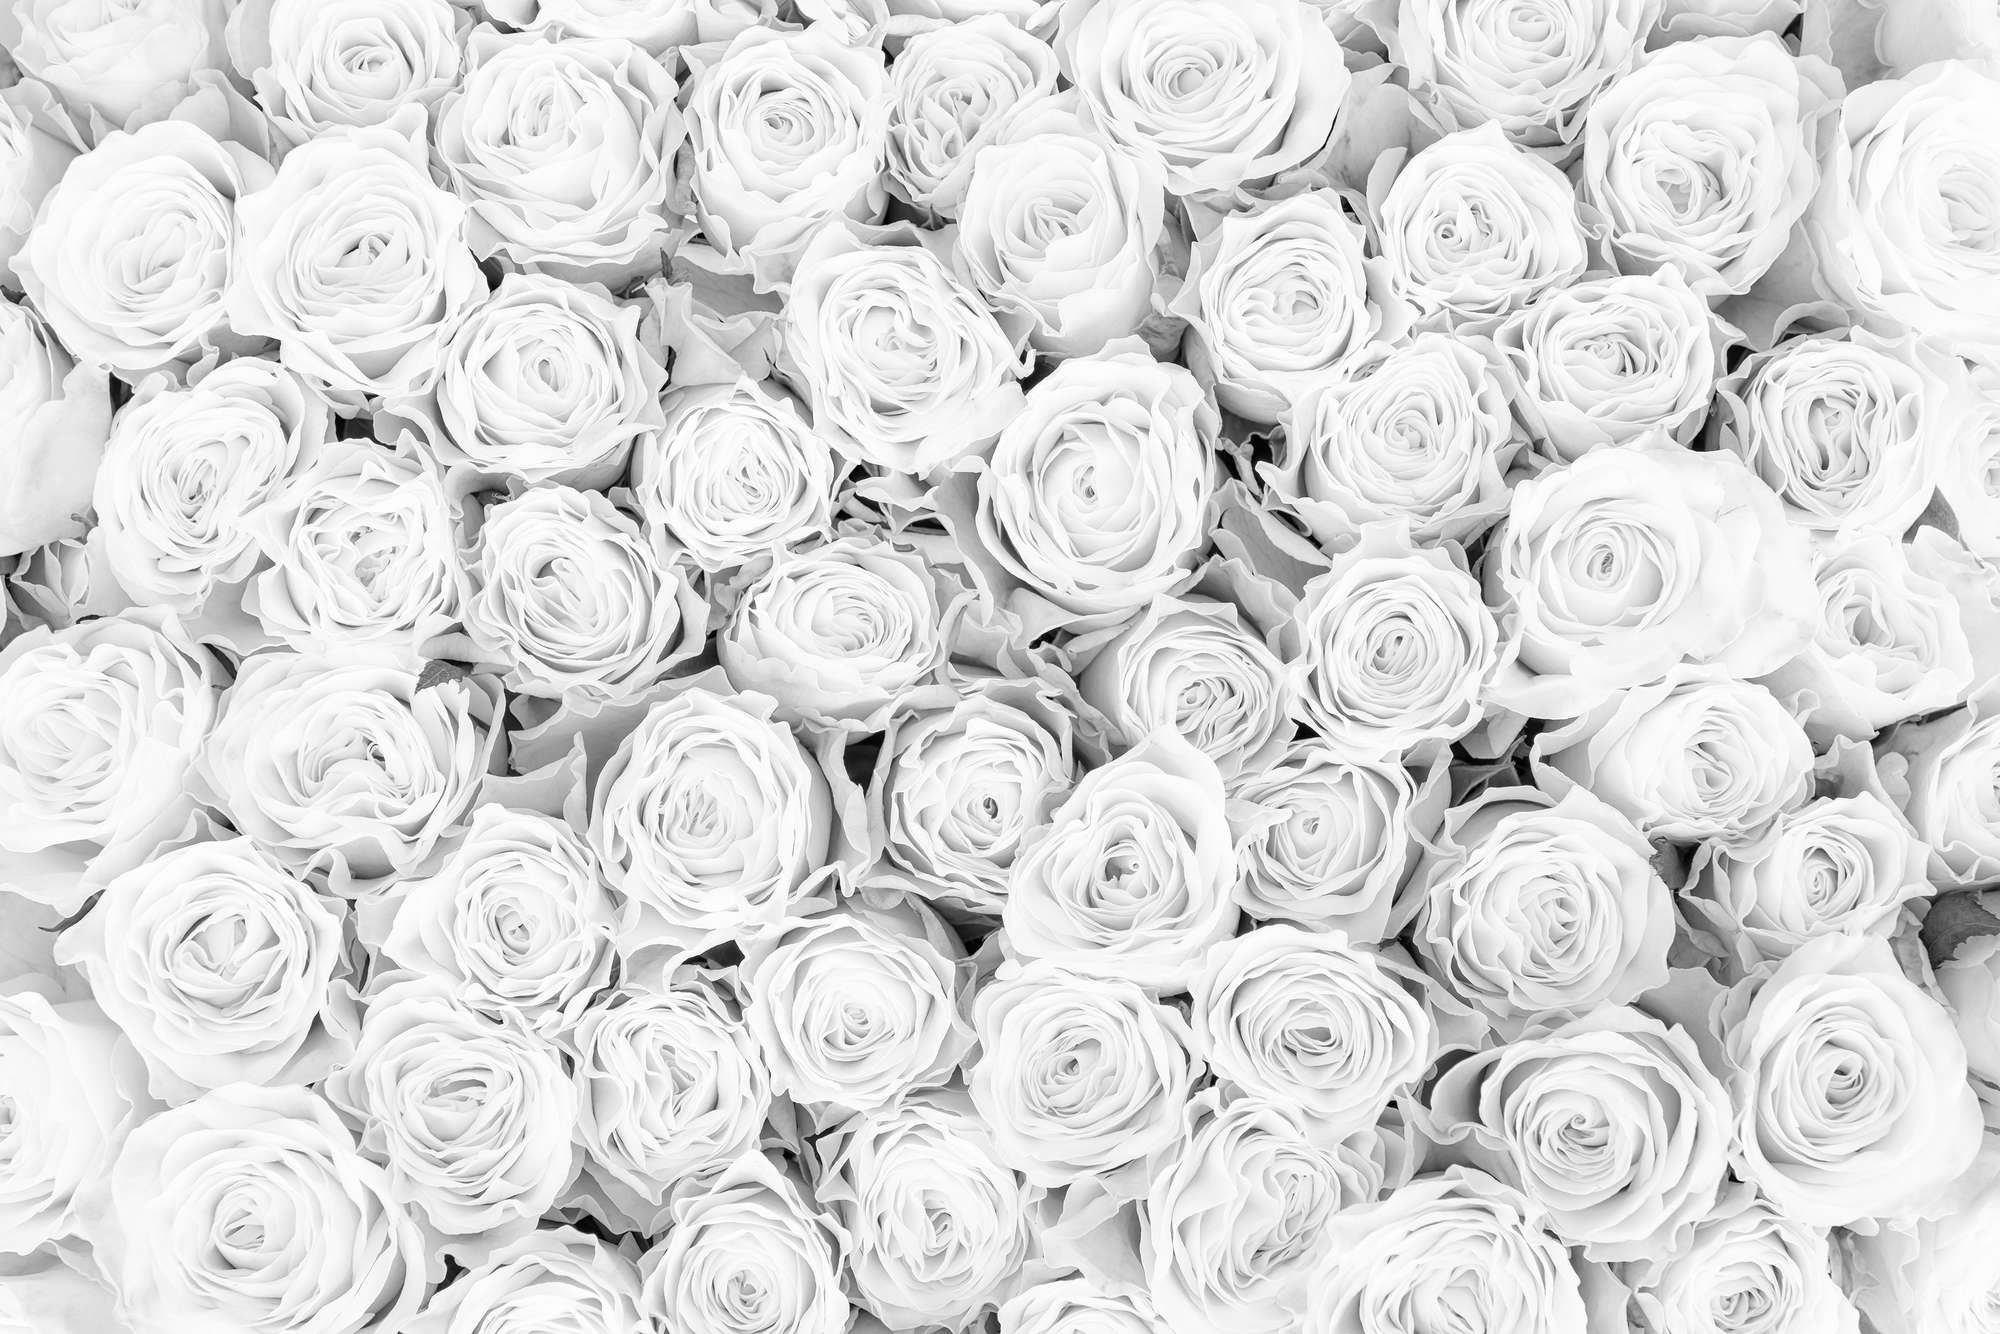             Papier peint végétal roses blanches sur intissé lisse premium
        